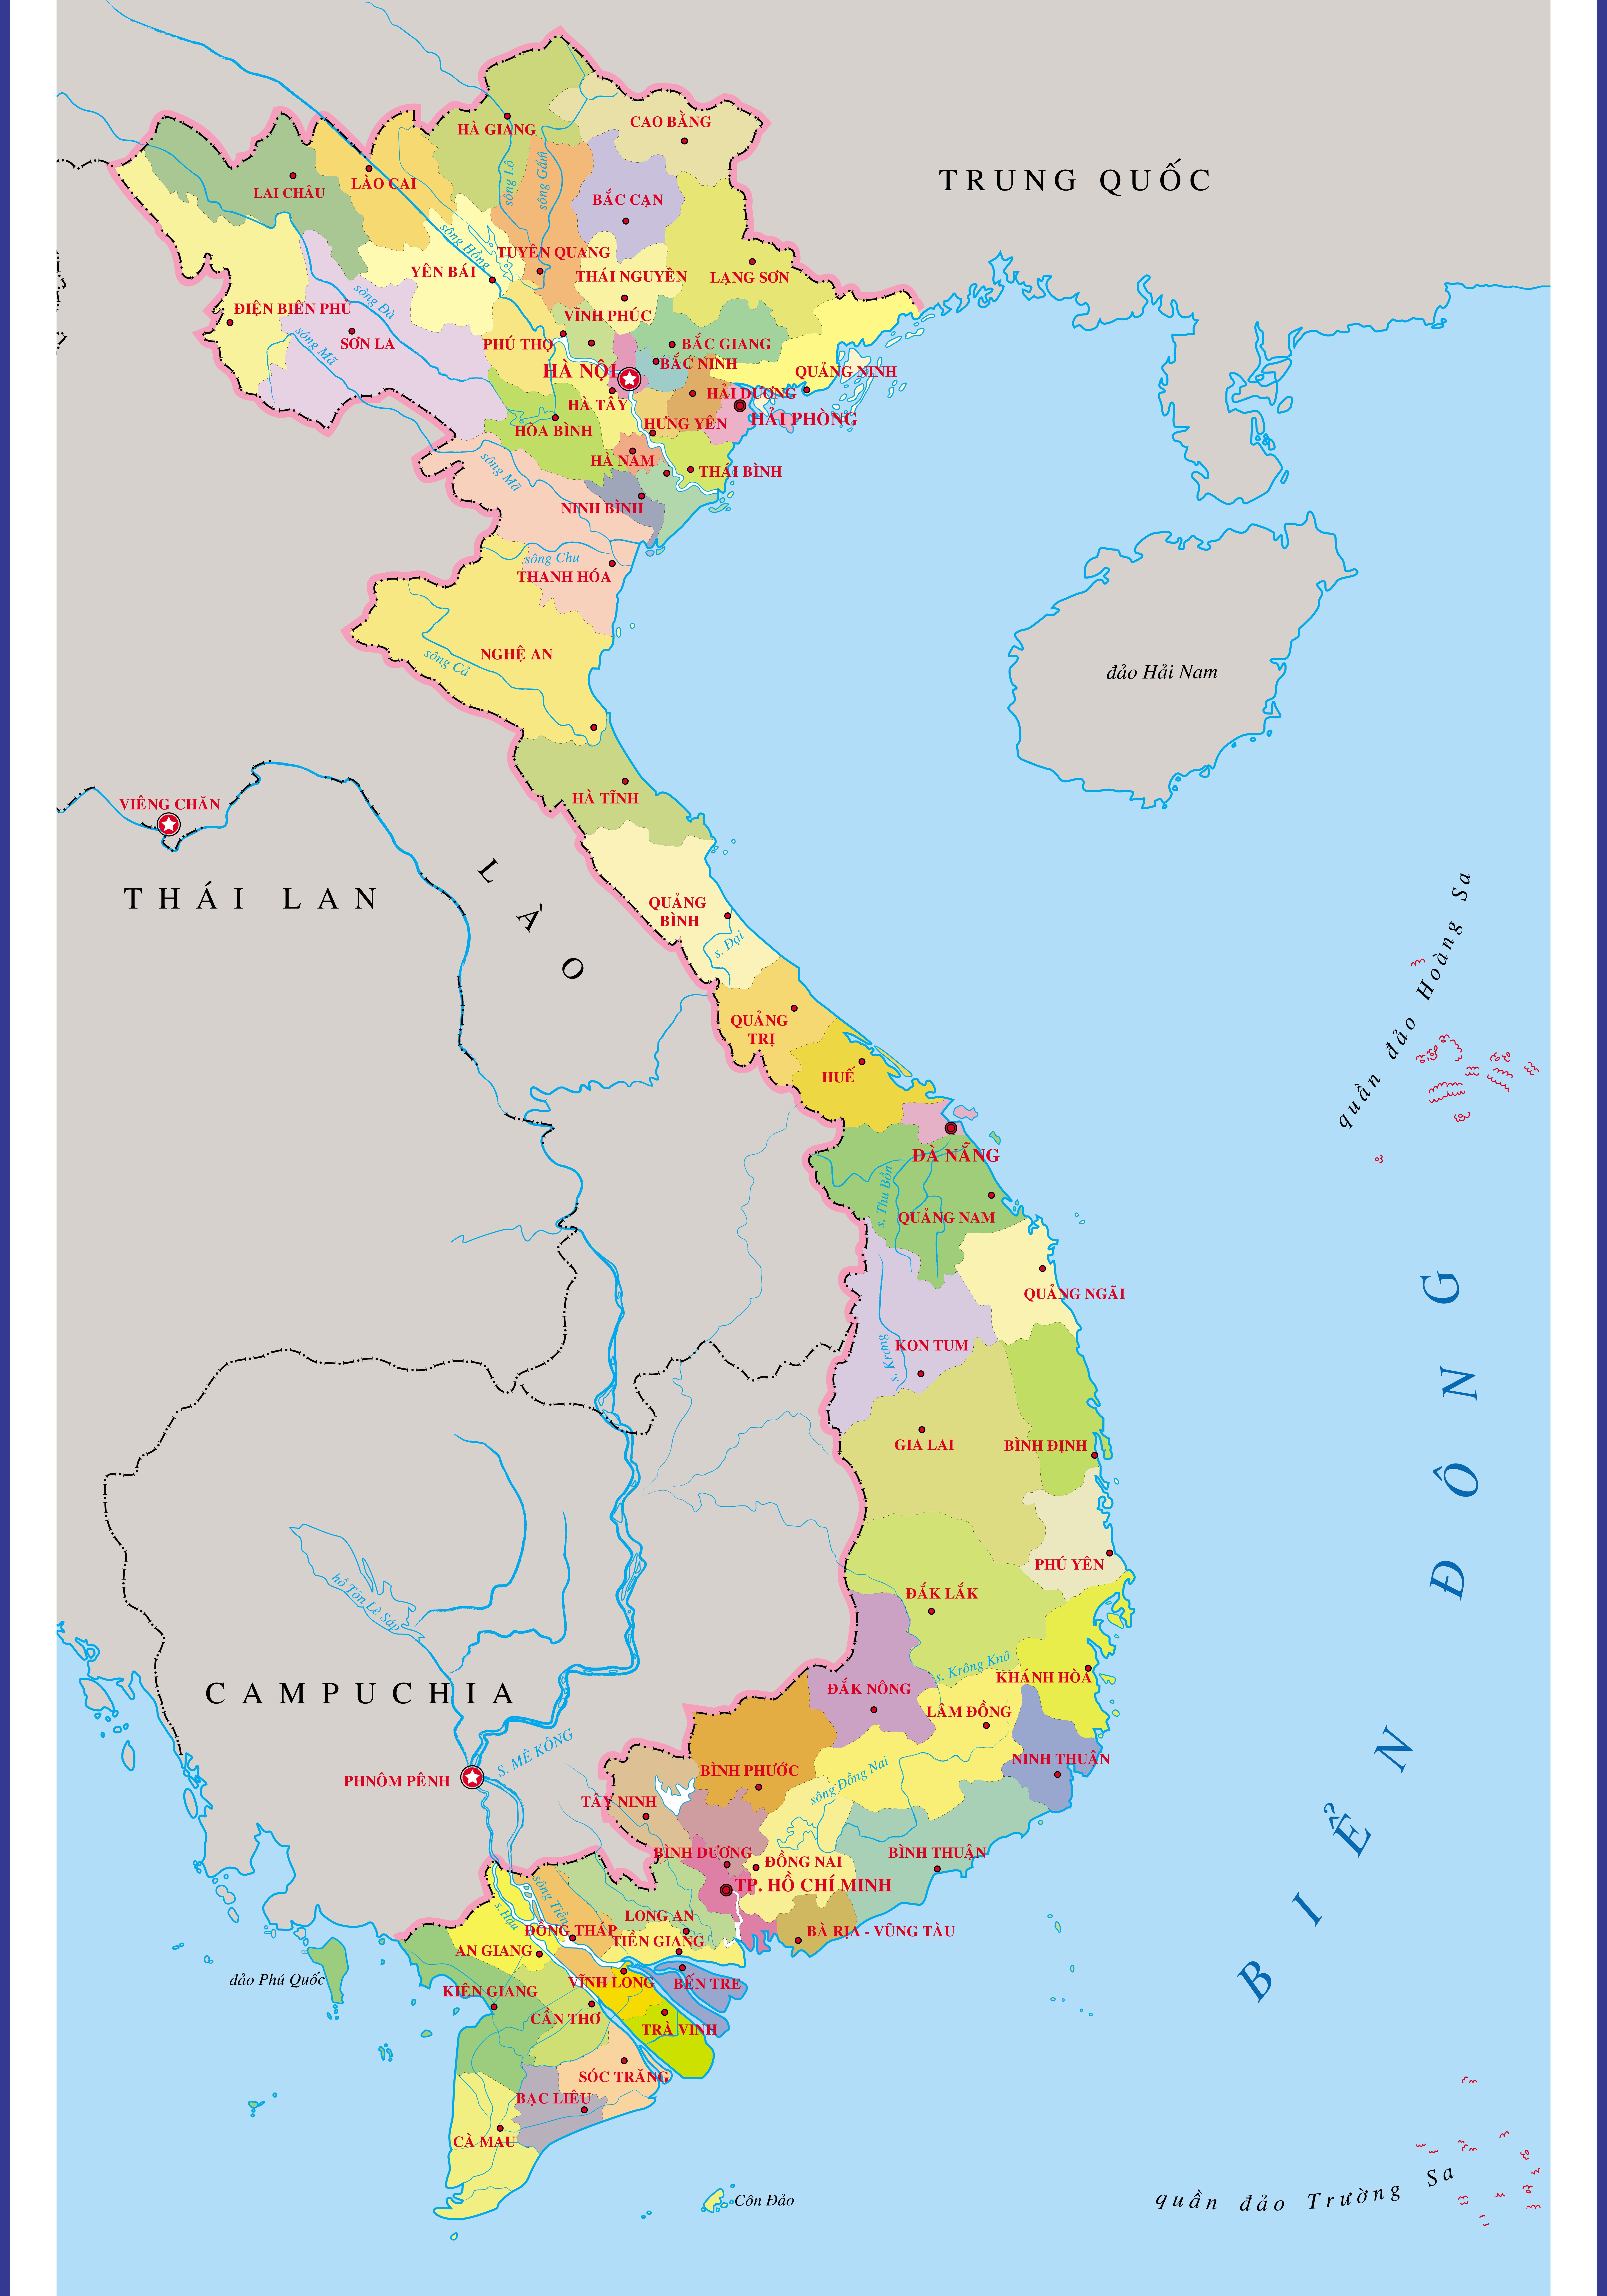 Bản đồ diện tích các tỉnh Việt Nam 2024 sẽ giúp bạn hiểu rõ hơn về vị trí và diện tích của các tỉnh, từ đó đưa ra những quyết định đúng đắn trong việc phát triển kinh tế và xã hội.